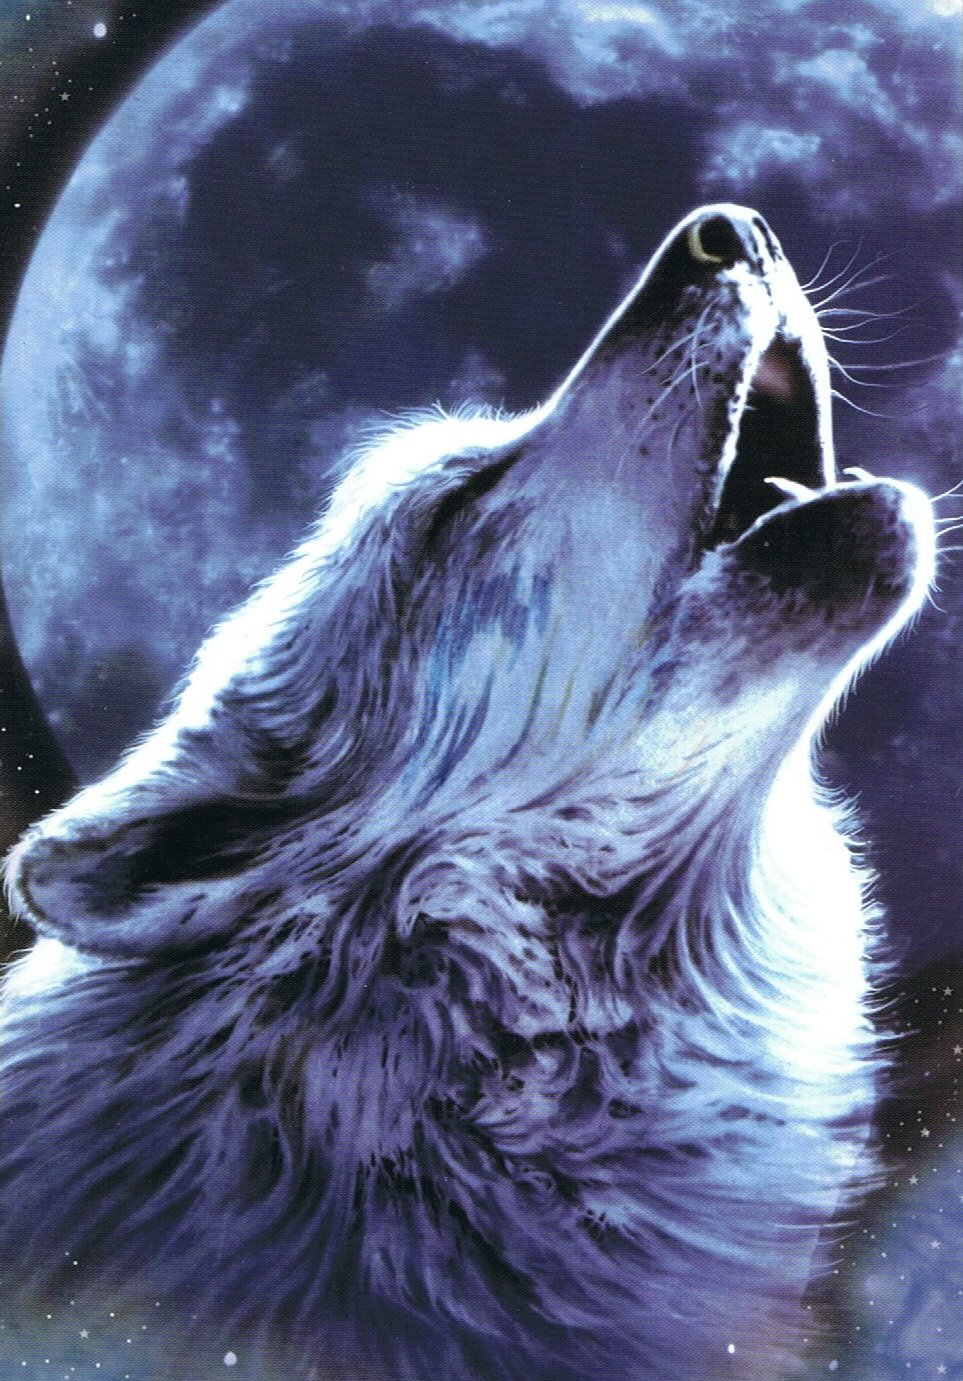 Hình ảnh chó sói dưới trăng: Nhìn vào hình ảnh chó sói dưới trăng, bạn sẽ cảm nhận được vẻ đẹp hoang dã và mạnh mẽ của con vật này. Điểm nhấn chính của bức hình này chính là ánh trăng lung linh, tạo nên một không gian huyền bí và đầy ảo diệu. Hãy khám phá và chiêm ngưỡng vẻ đẹp tuyệt vời của chó sói và ánh trăng trong hình ảnh này nhé!